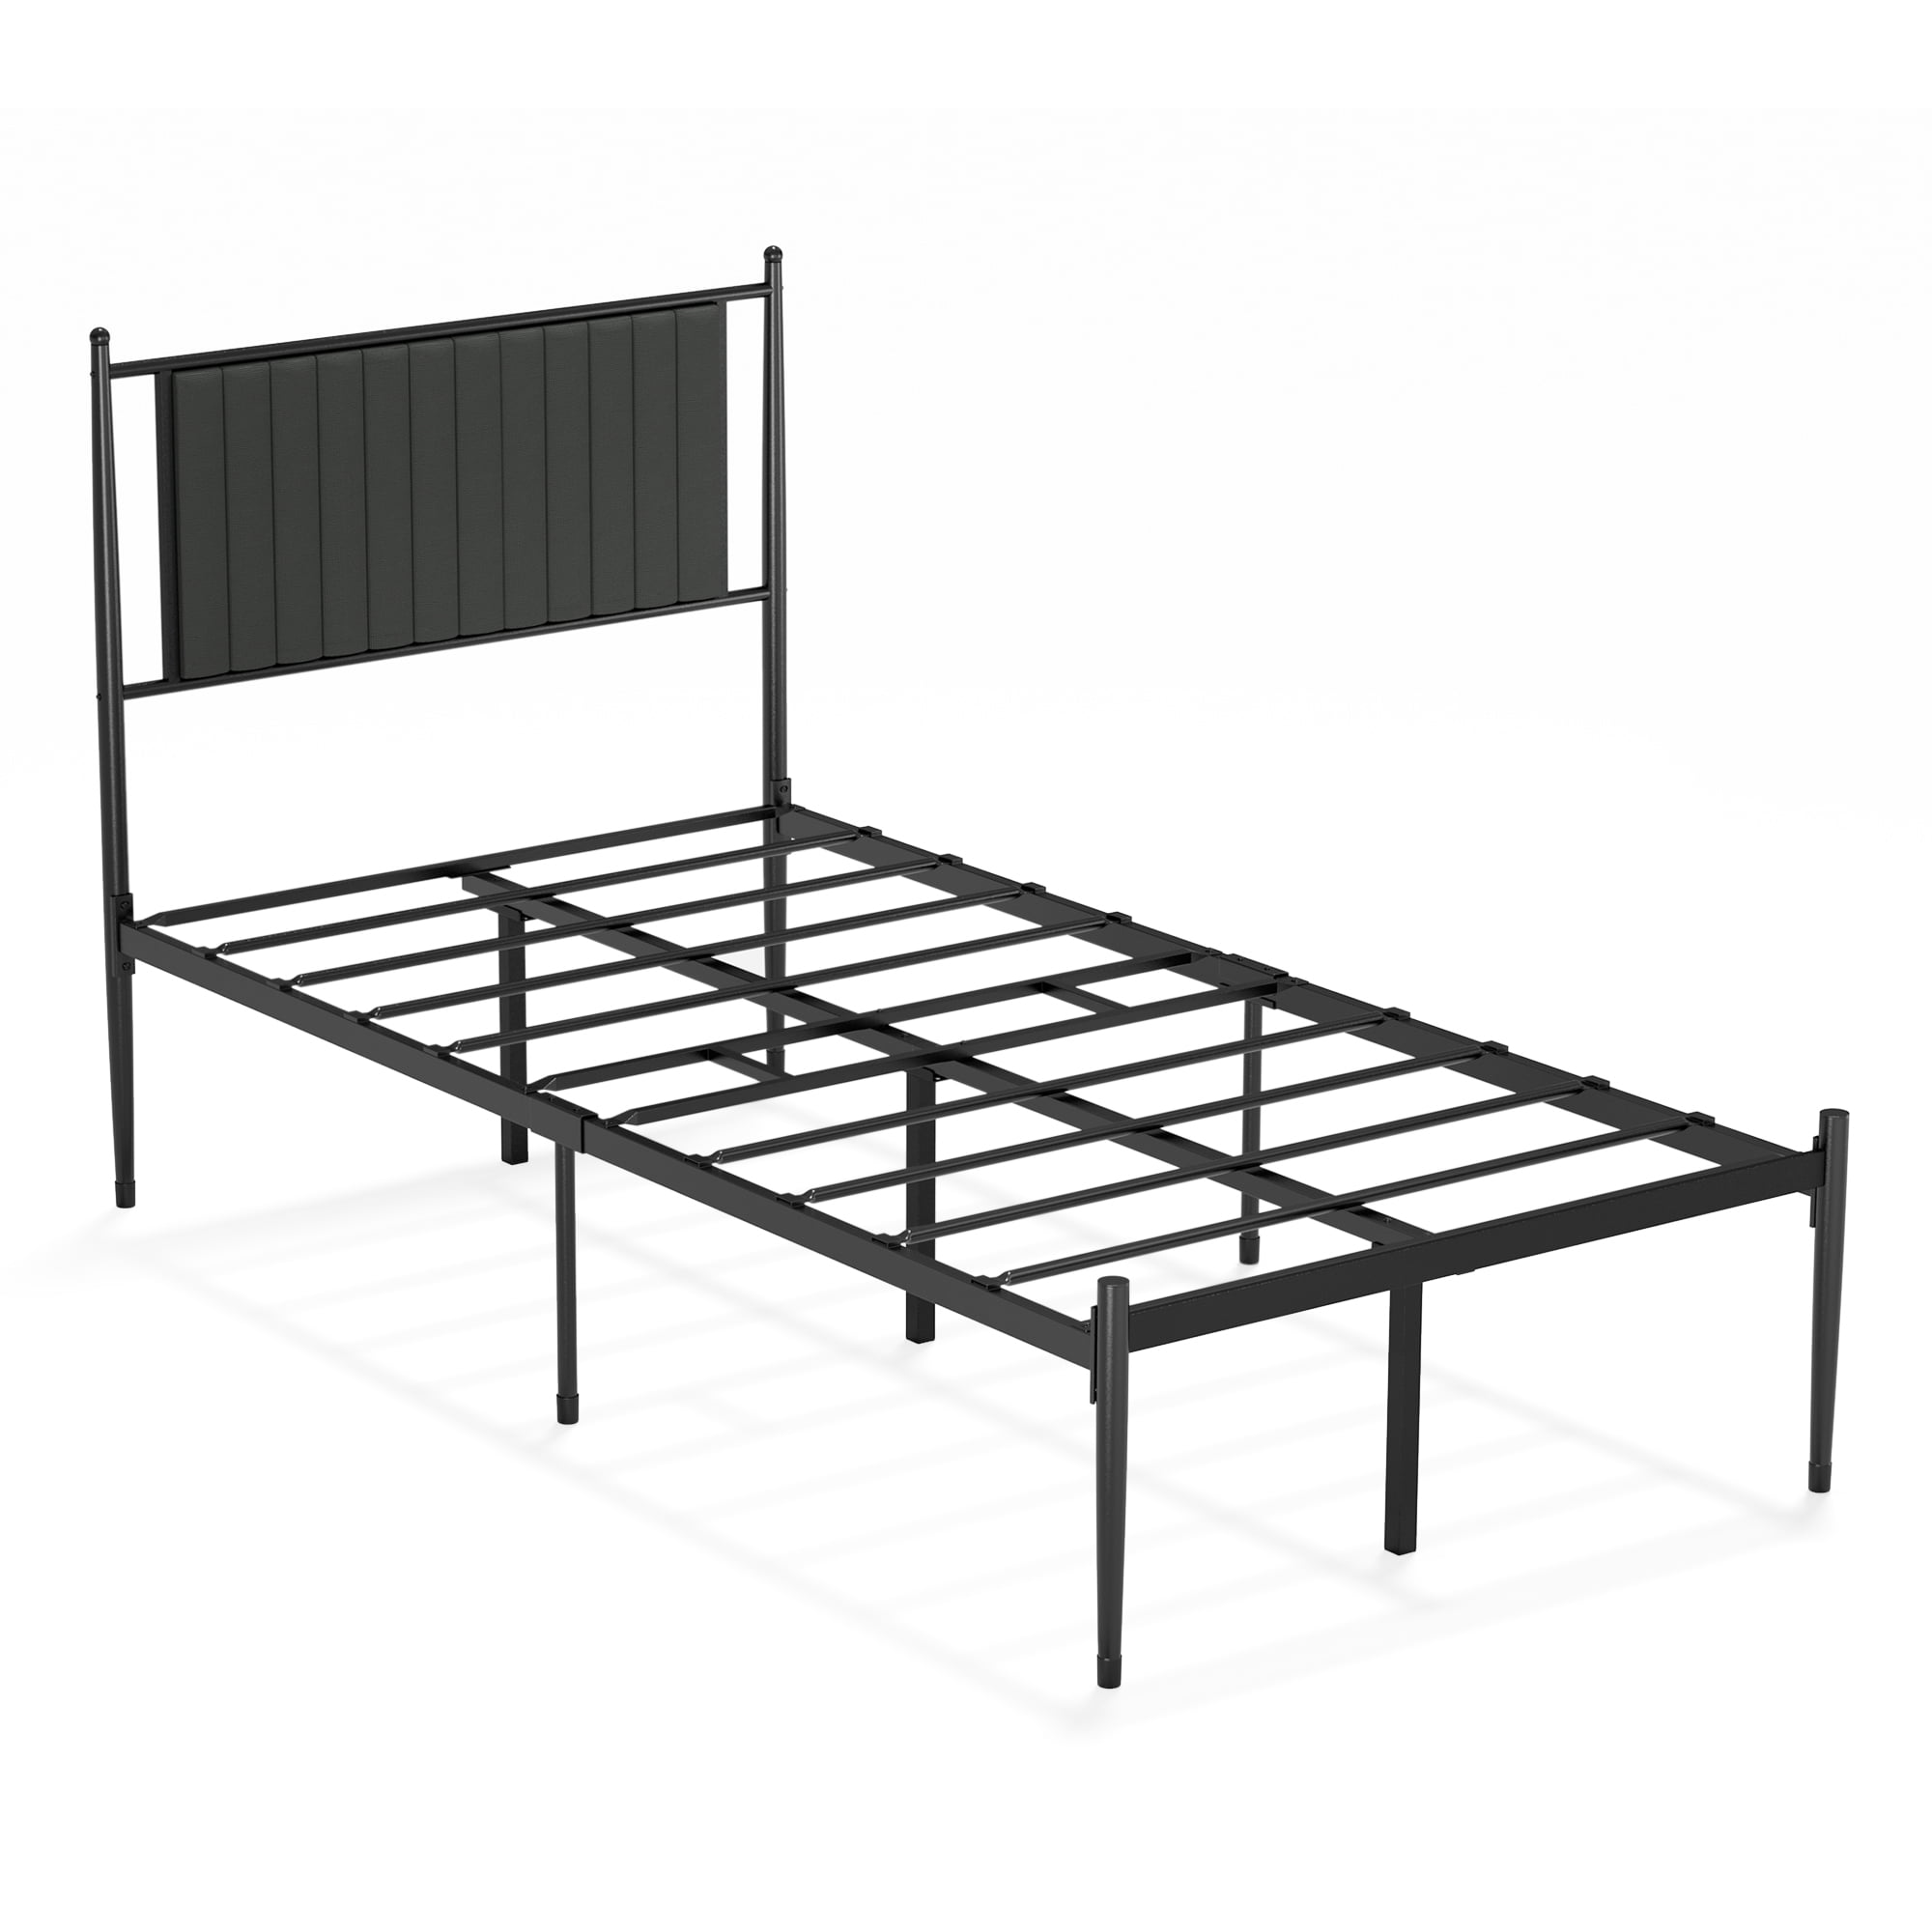 Details about   Modern Twin Twin XL Queen King Bed Frame Metal Platform Slat Mattress Foundation 